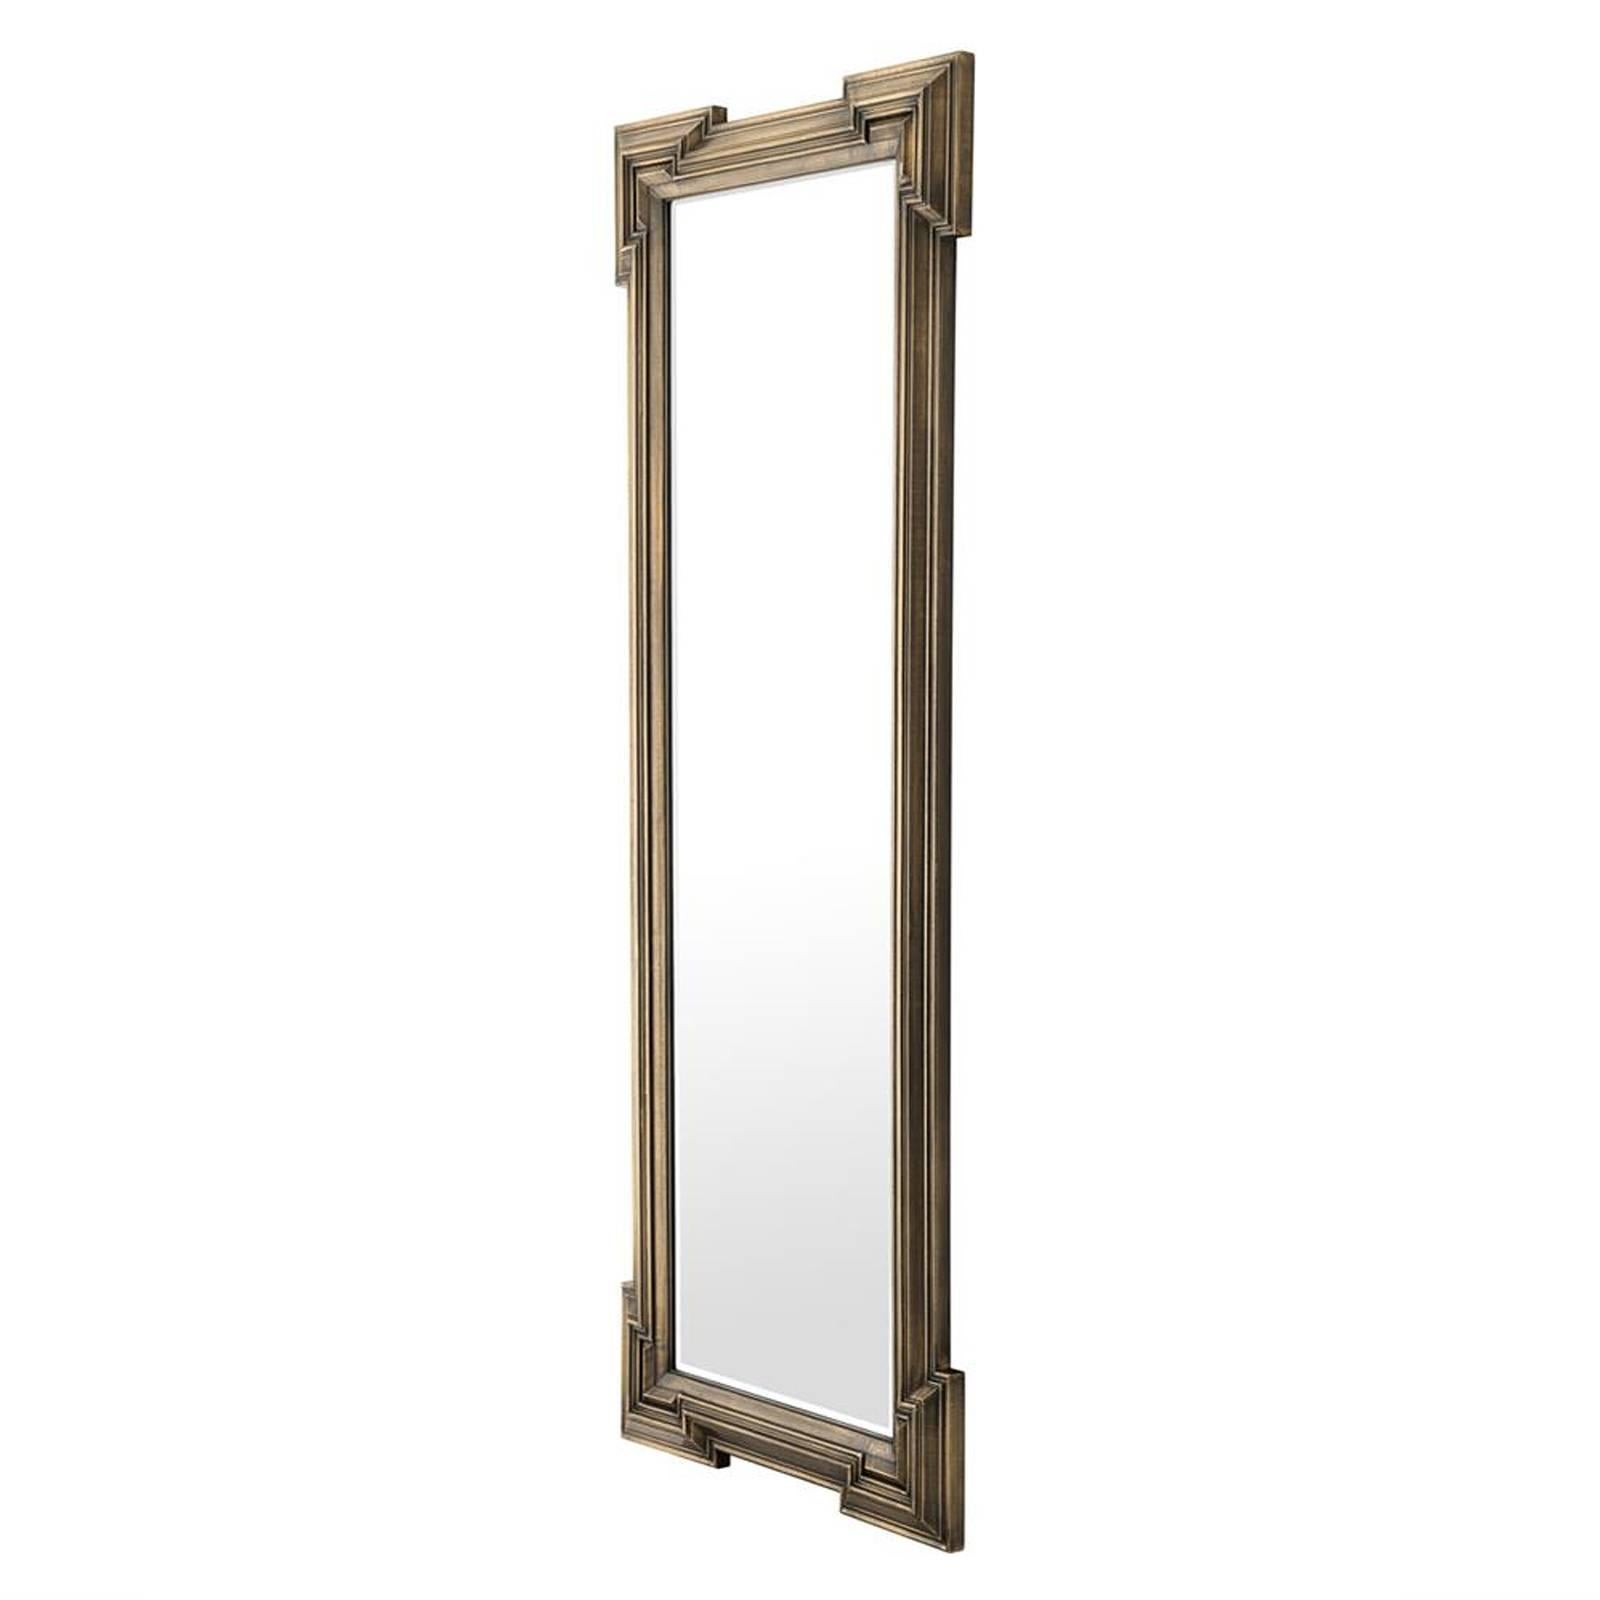 Spiegel Scuadro mit antikem Messing Finish rechteckig 
rahmen und geschliffenem Spiegelglas. Elegantes Stück.
Auch mit quadratischem Rahmen erhältlich.
